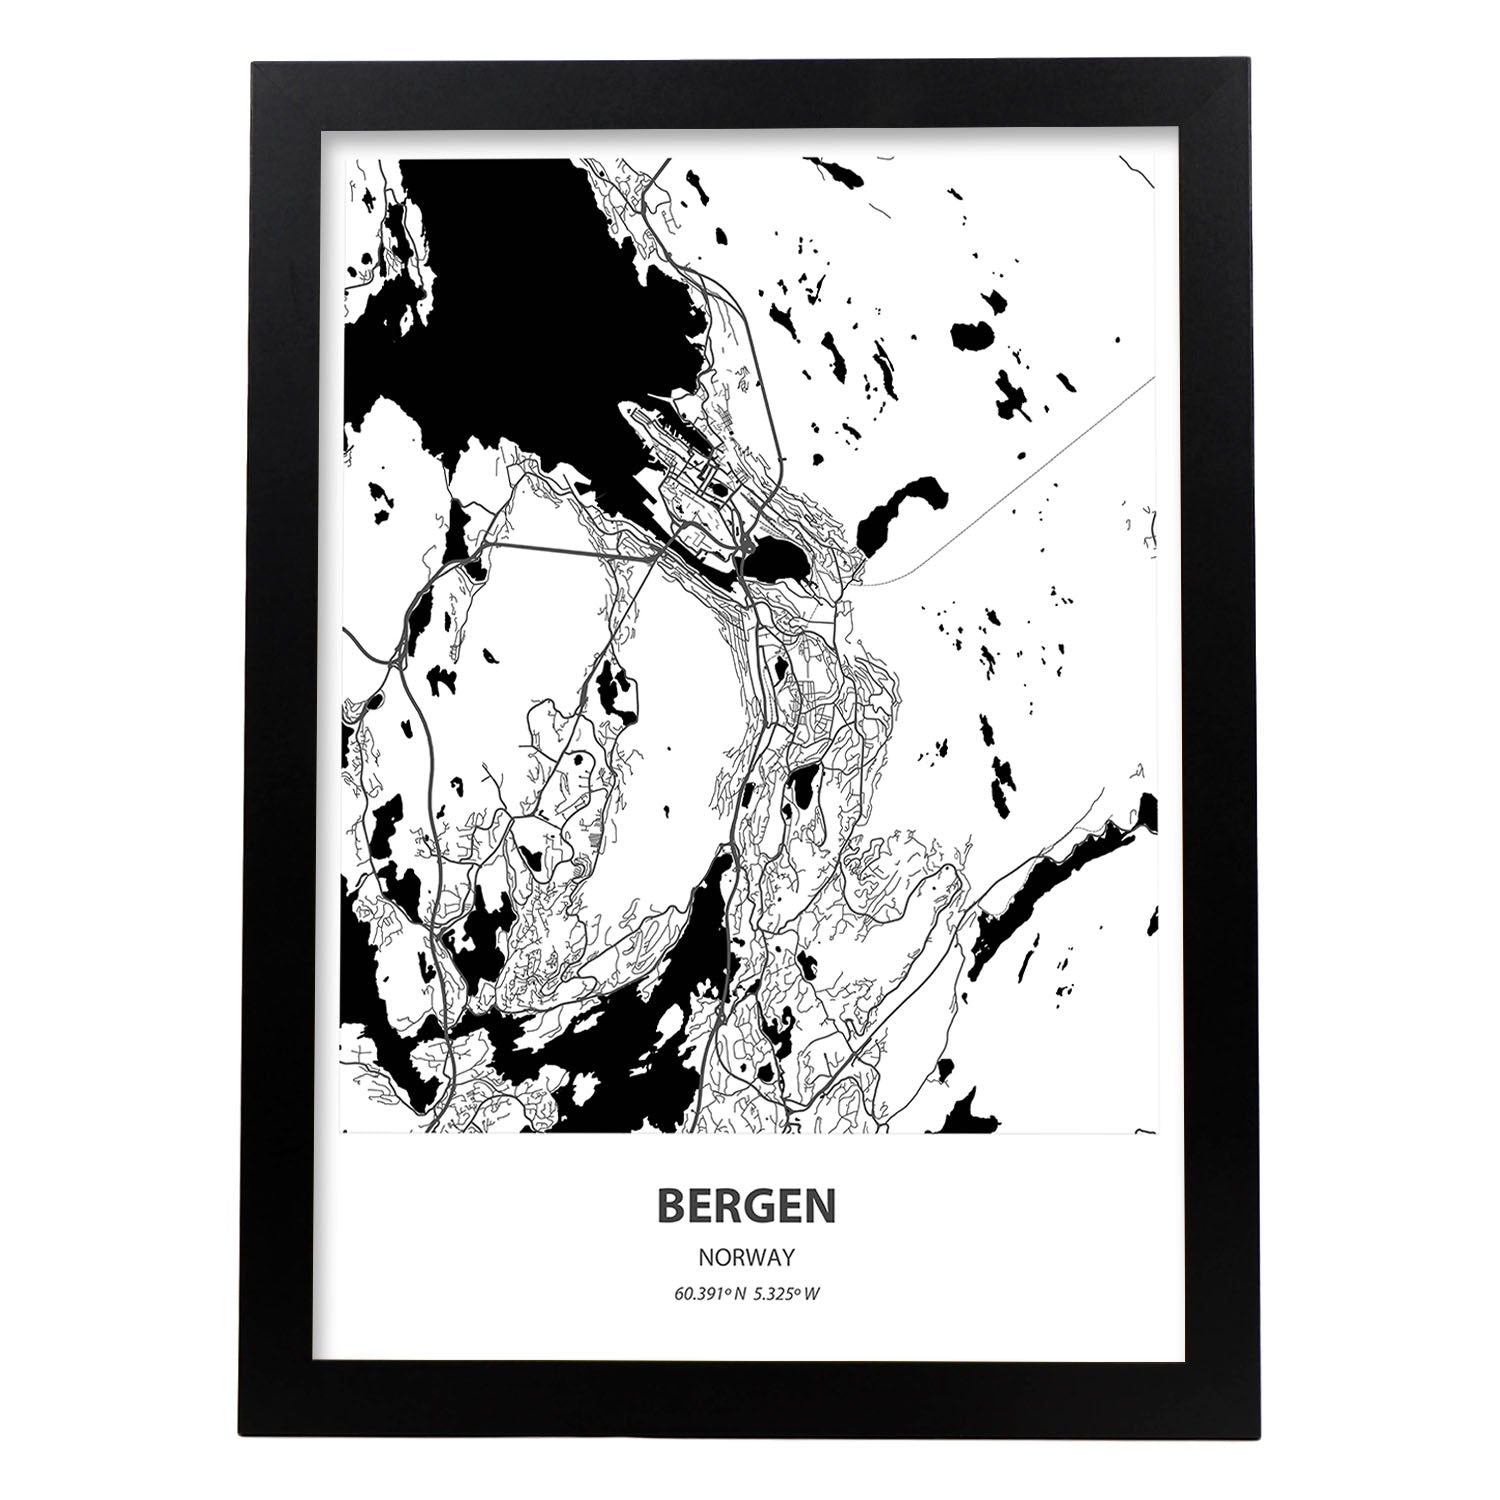 Poster con mapa de Bergen - Noruega. Láminas de ciudades del norte de Europa con mares y ríos en color negro.-Artwork-Nacnic-A4-Marco Negro-Nacnic Estudio SL